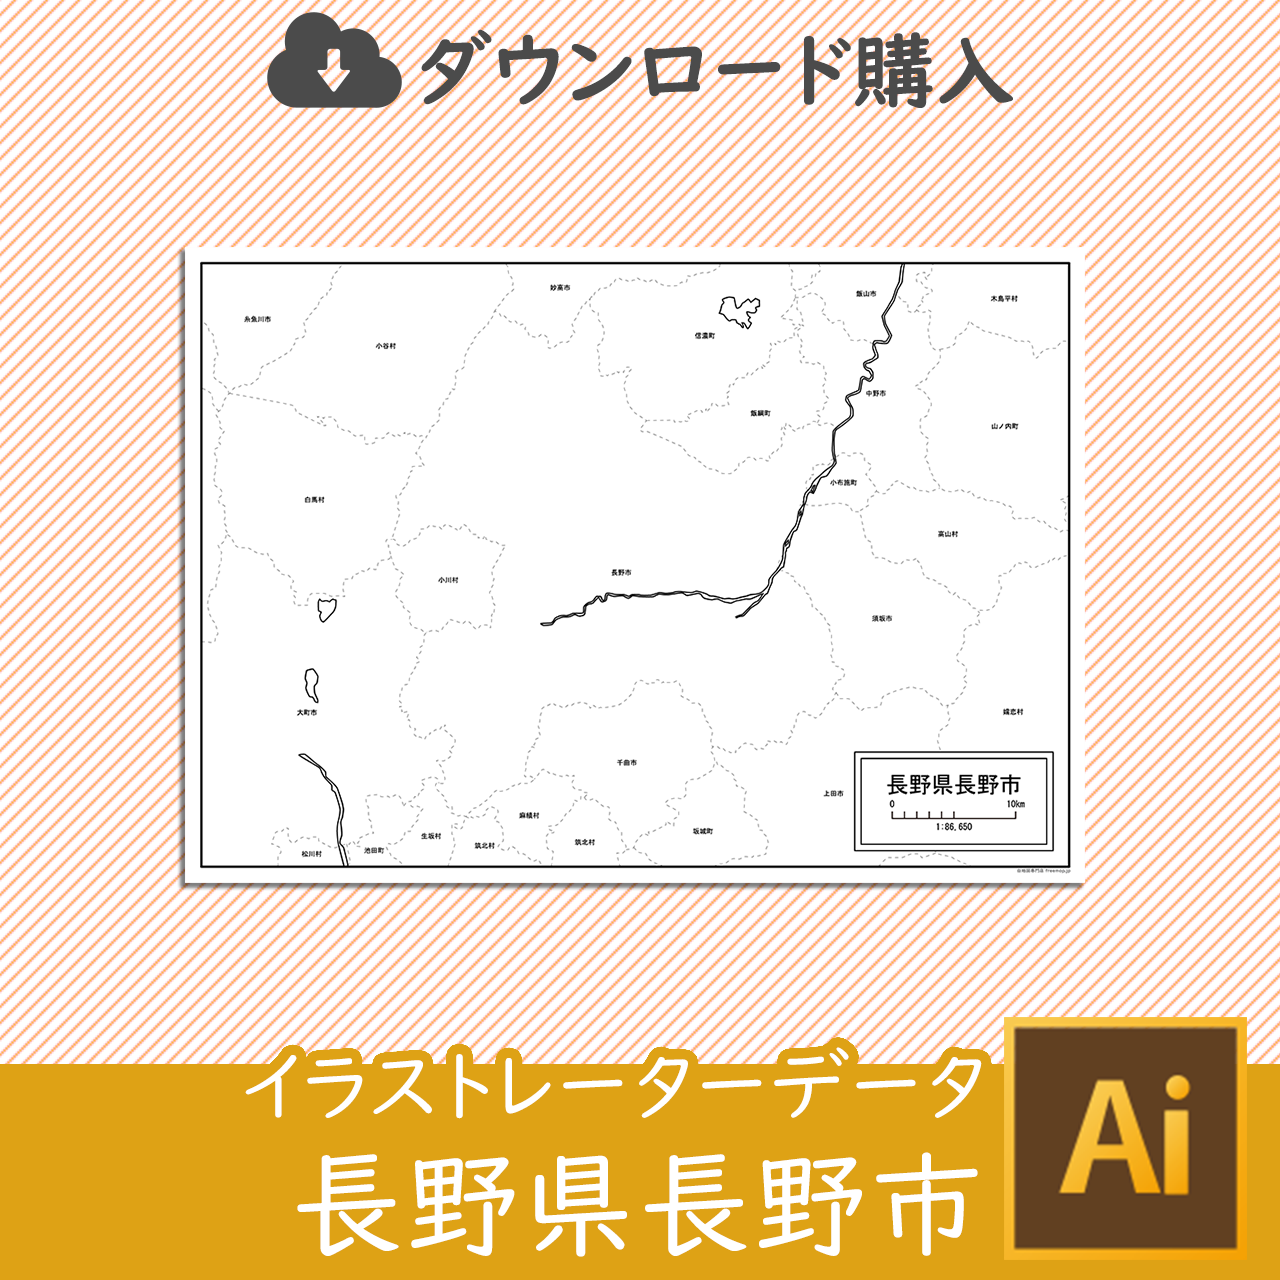 長野市のaiデータのサムネイル画像